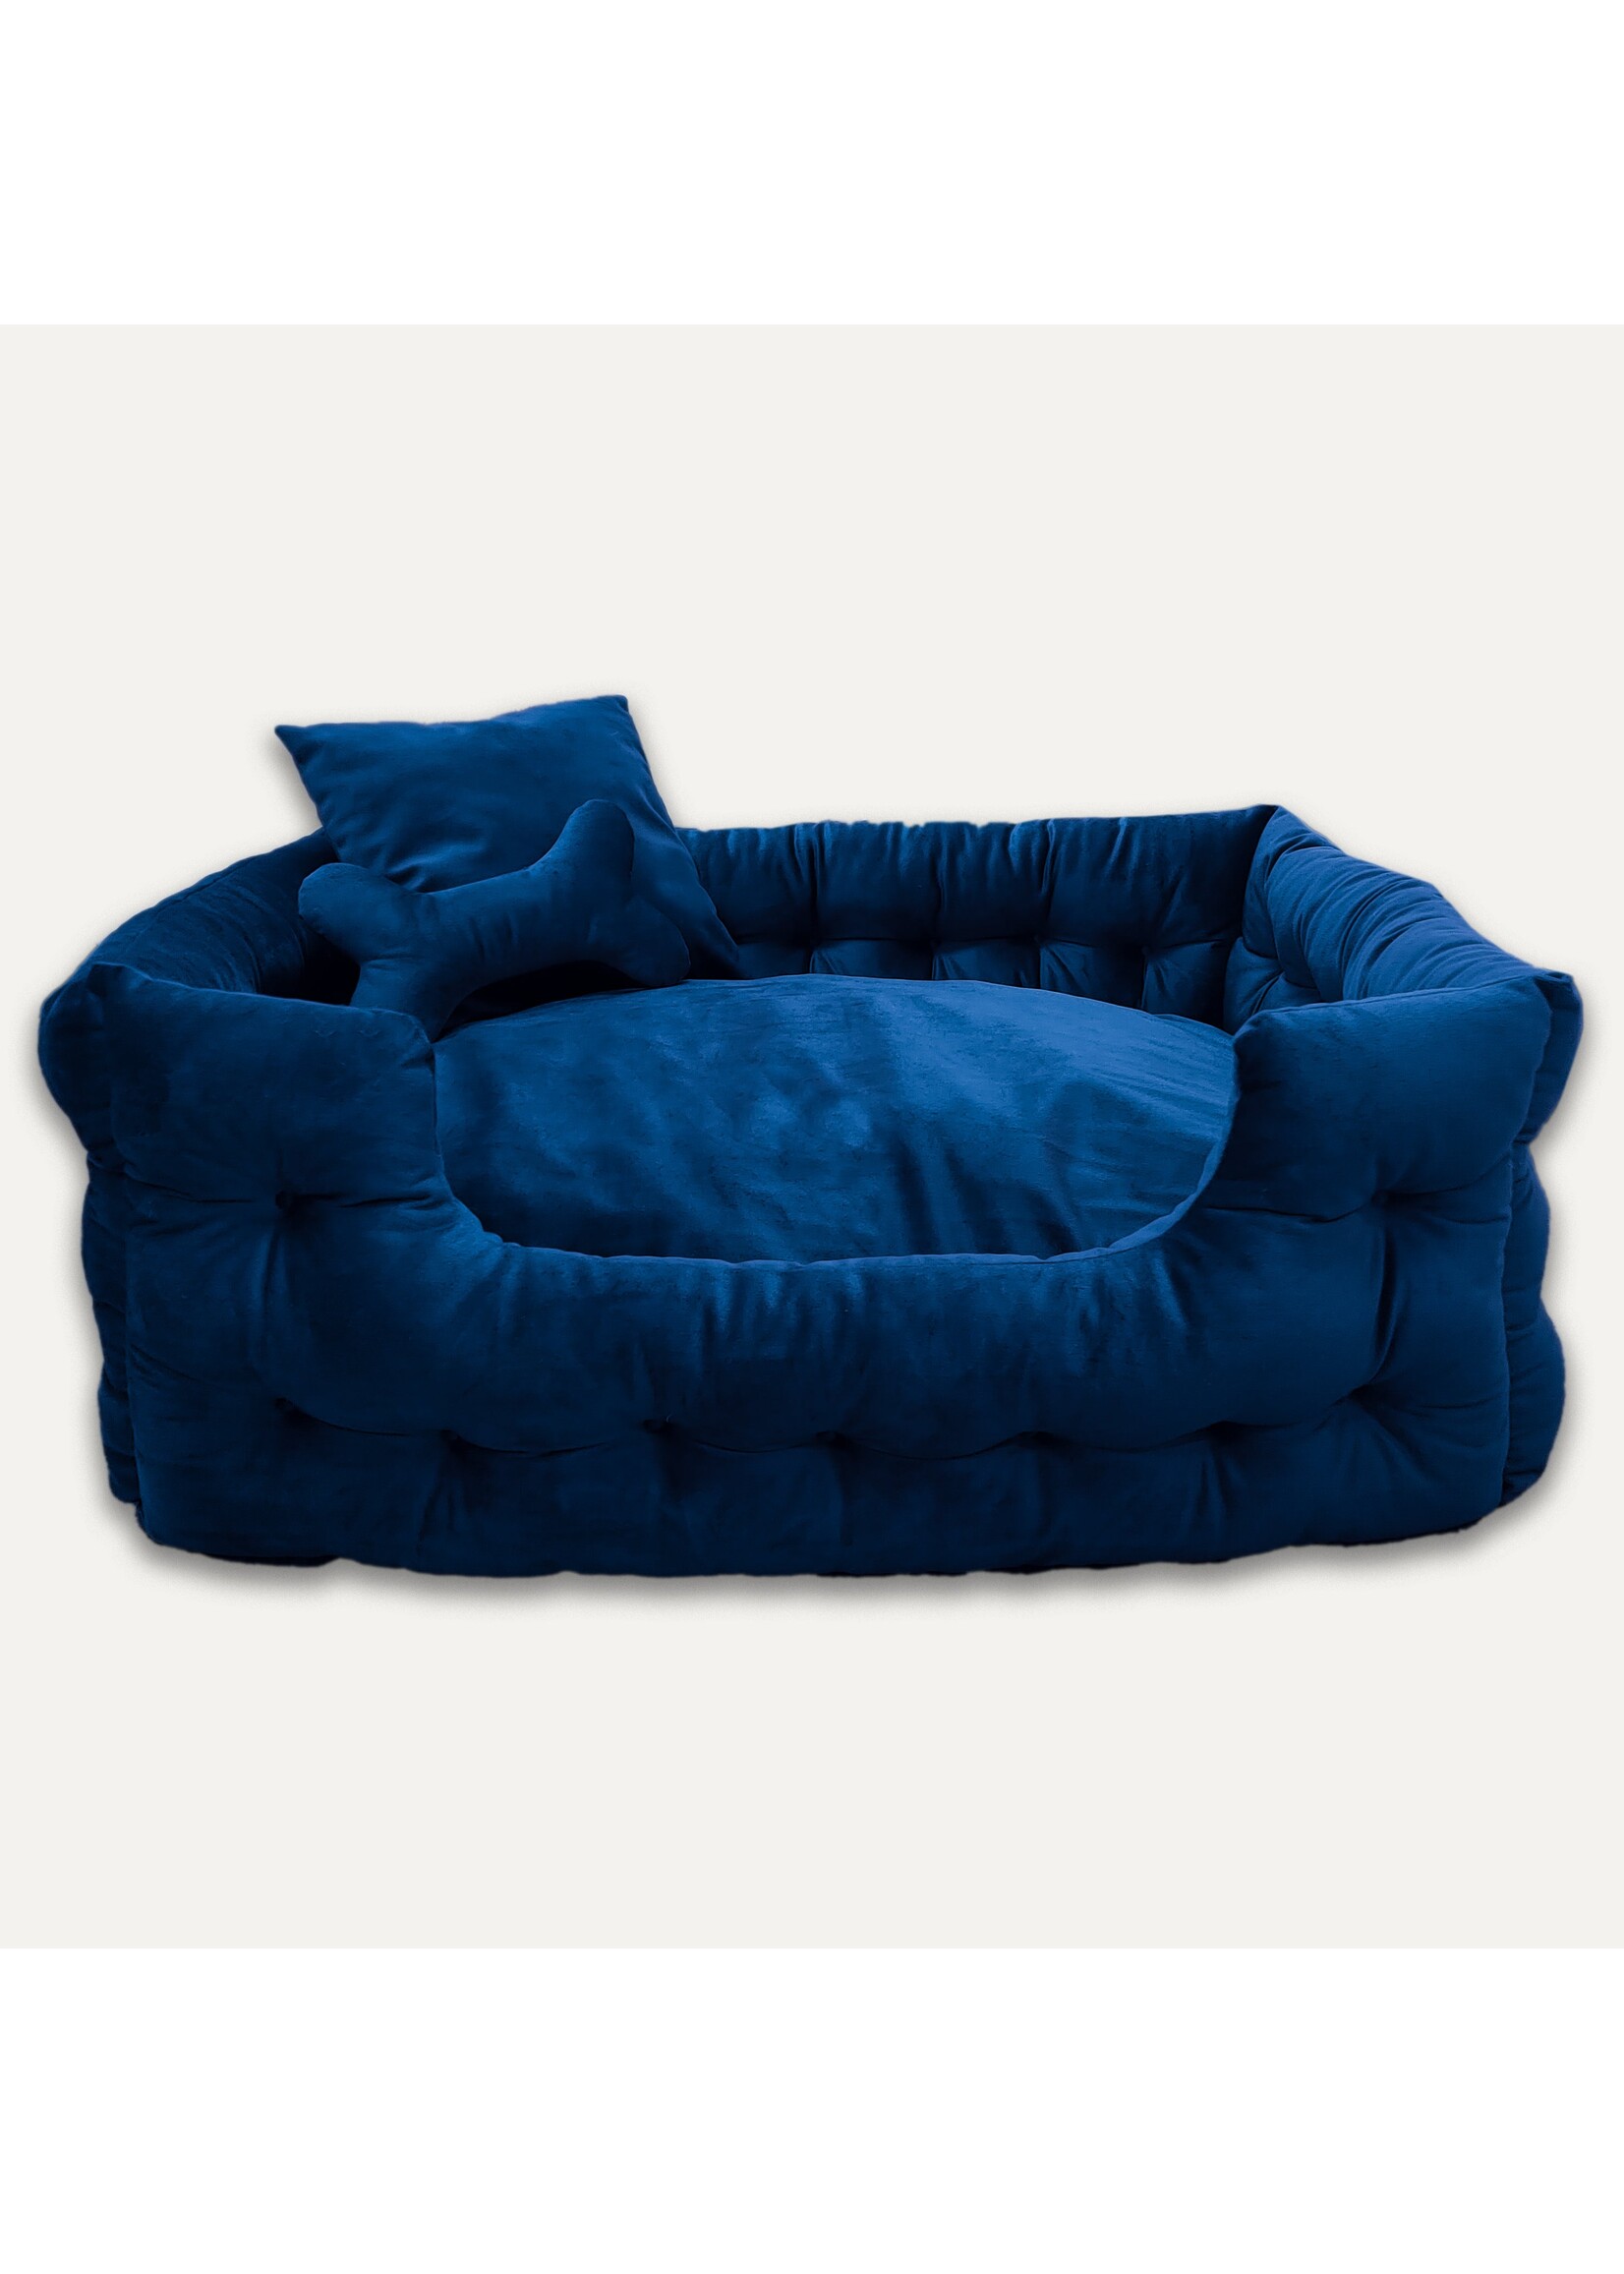 Gooeez Goo-eez Luxury Velour Pet Bed Royal Blue XLarge